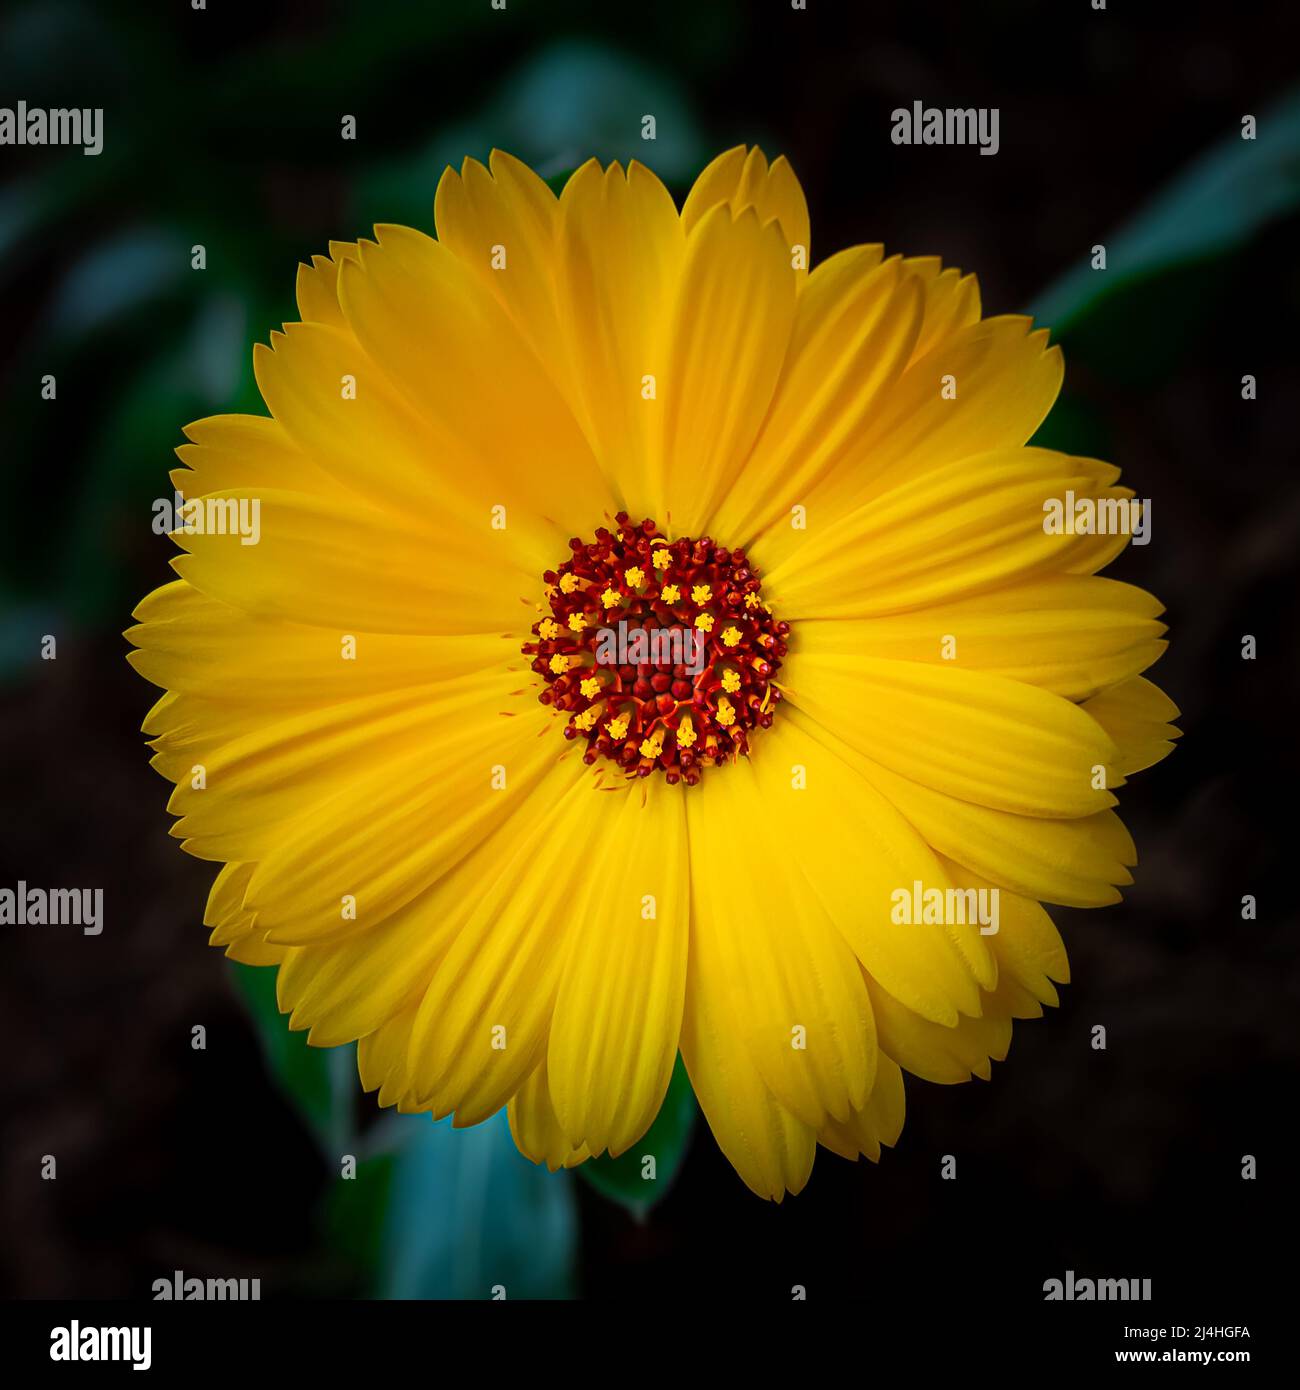 Gelbe Ringelblume oder englische Ringelblume (Calendula officinalis) Blume auf Blattgrund. Schönheit in der Natur. Stockfoto